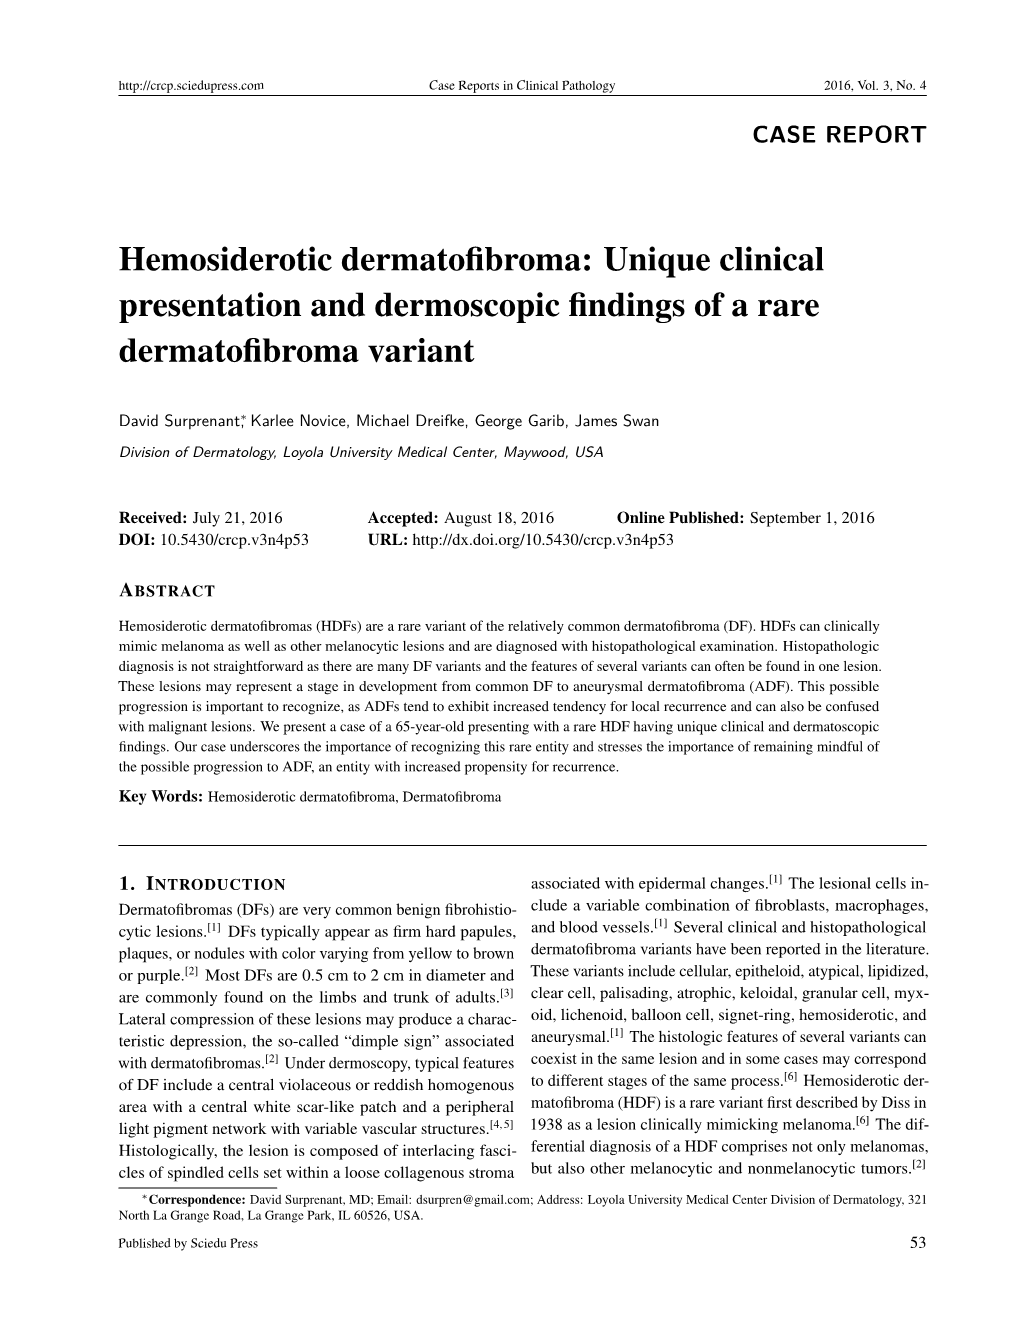 Hemosiderotic Dermatofibroma: Unique Clinical Presentation And